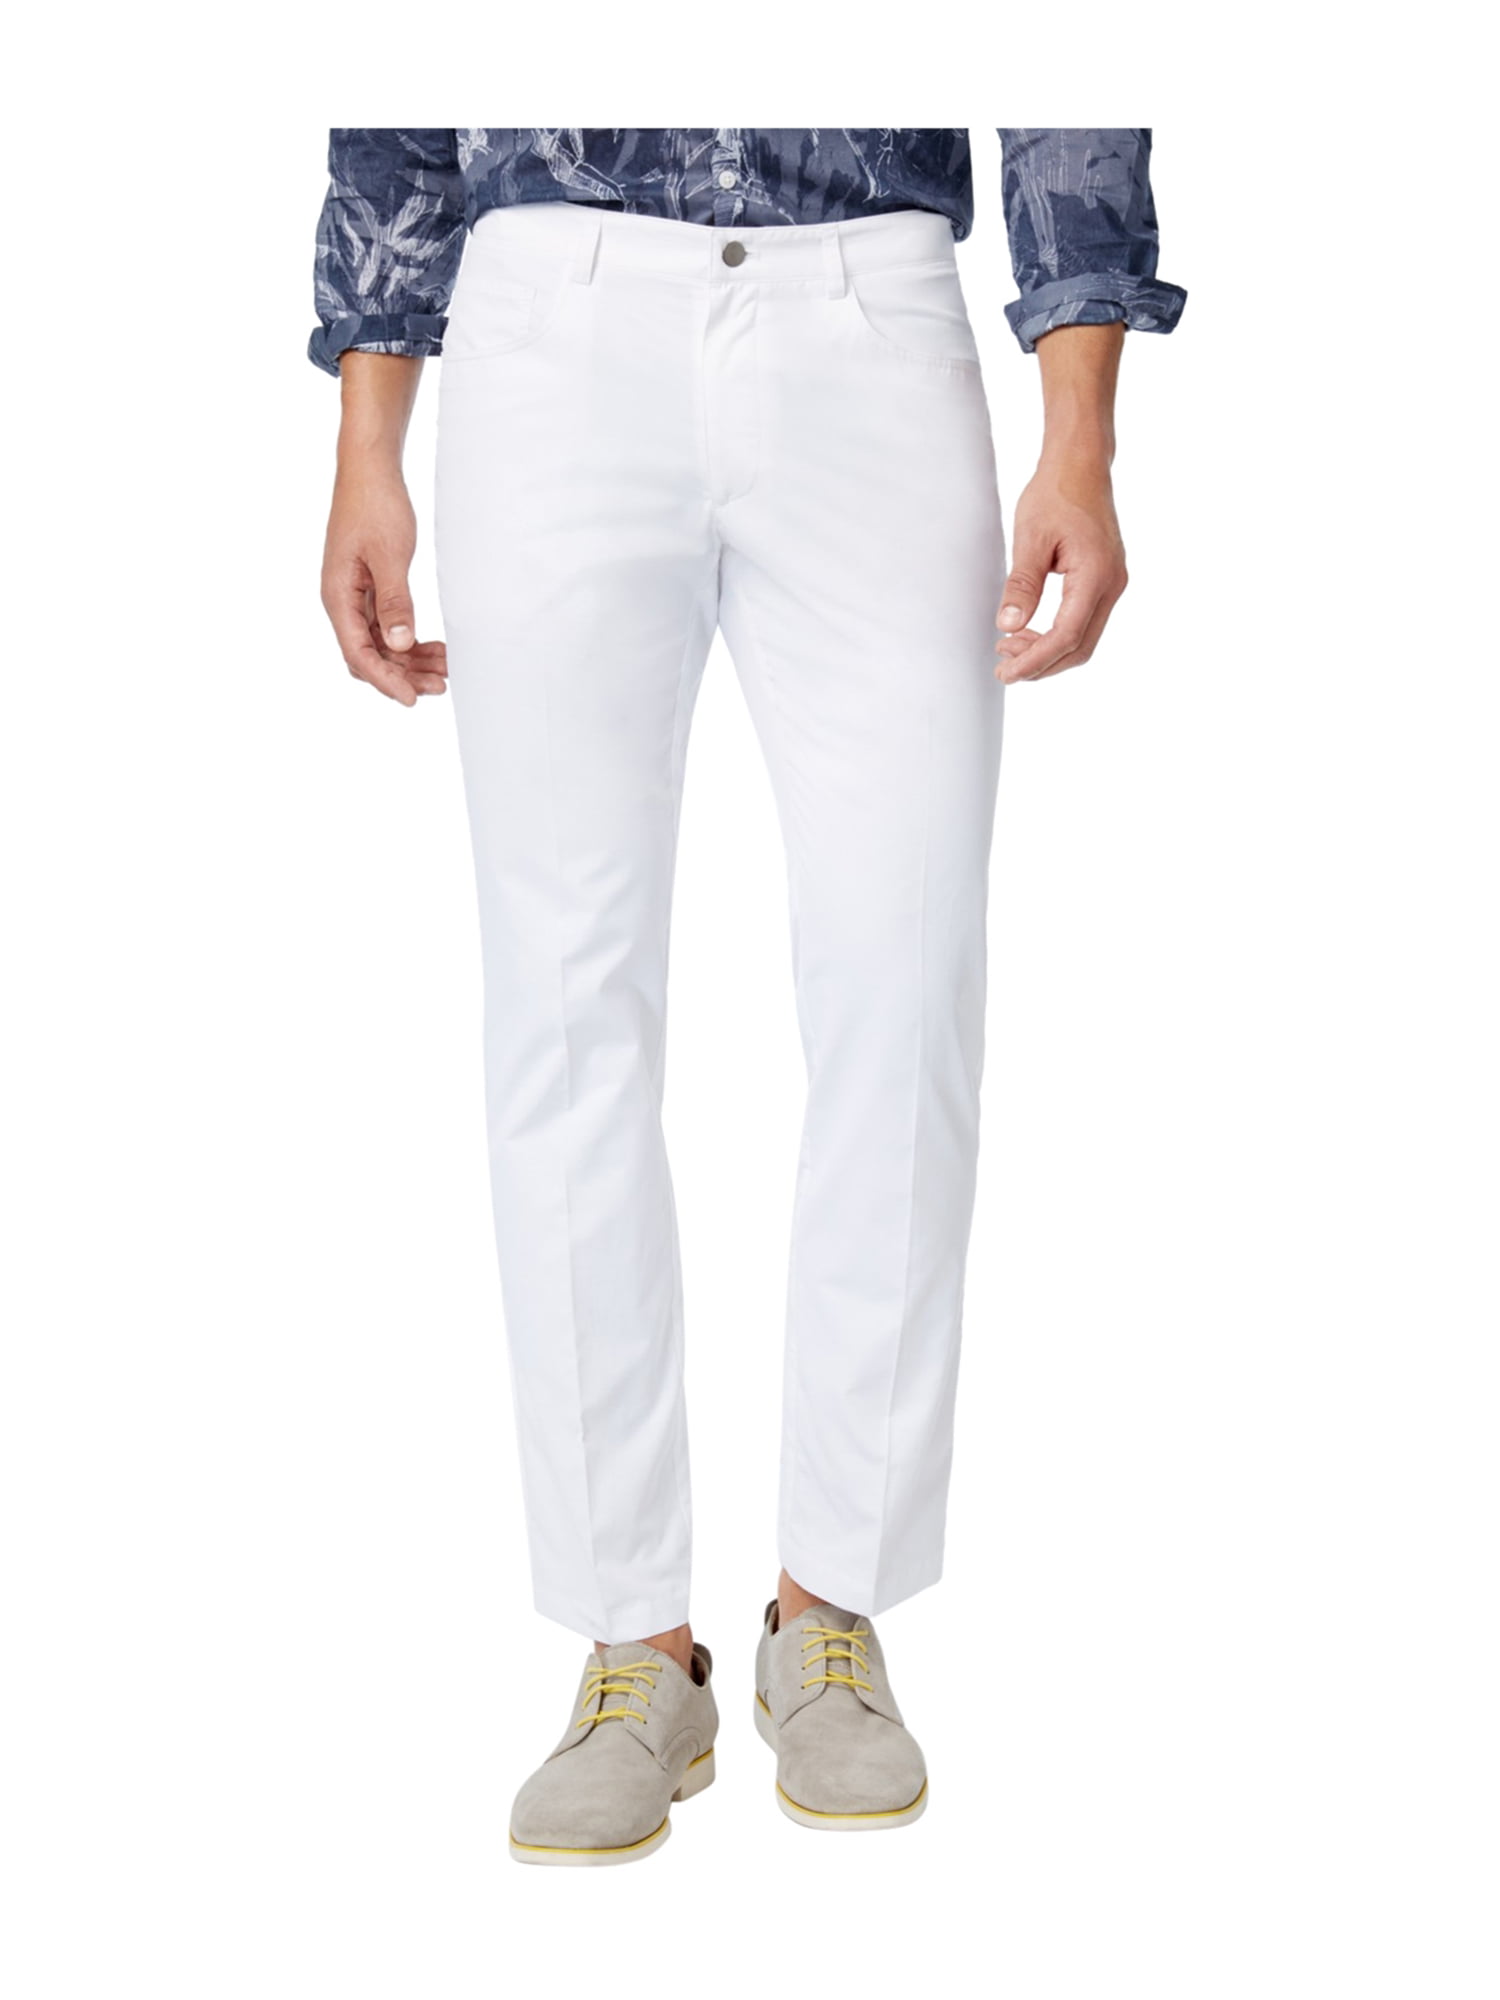 I-N-C Mens Slim Casual Trousers white 34x32 | Walmart Canada